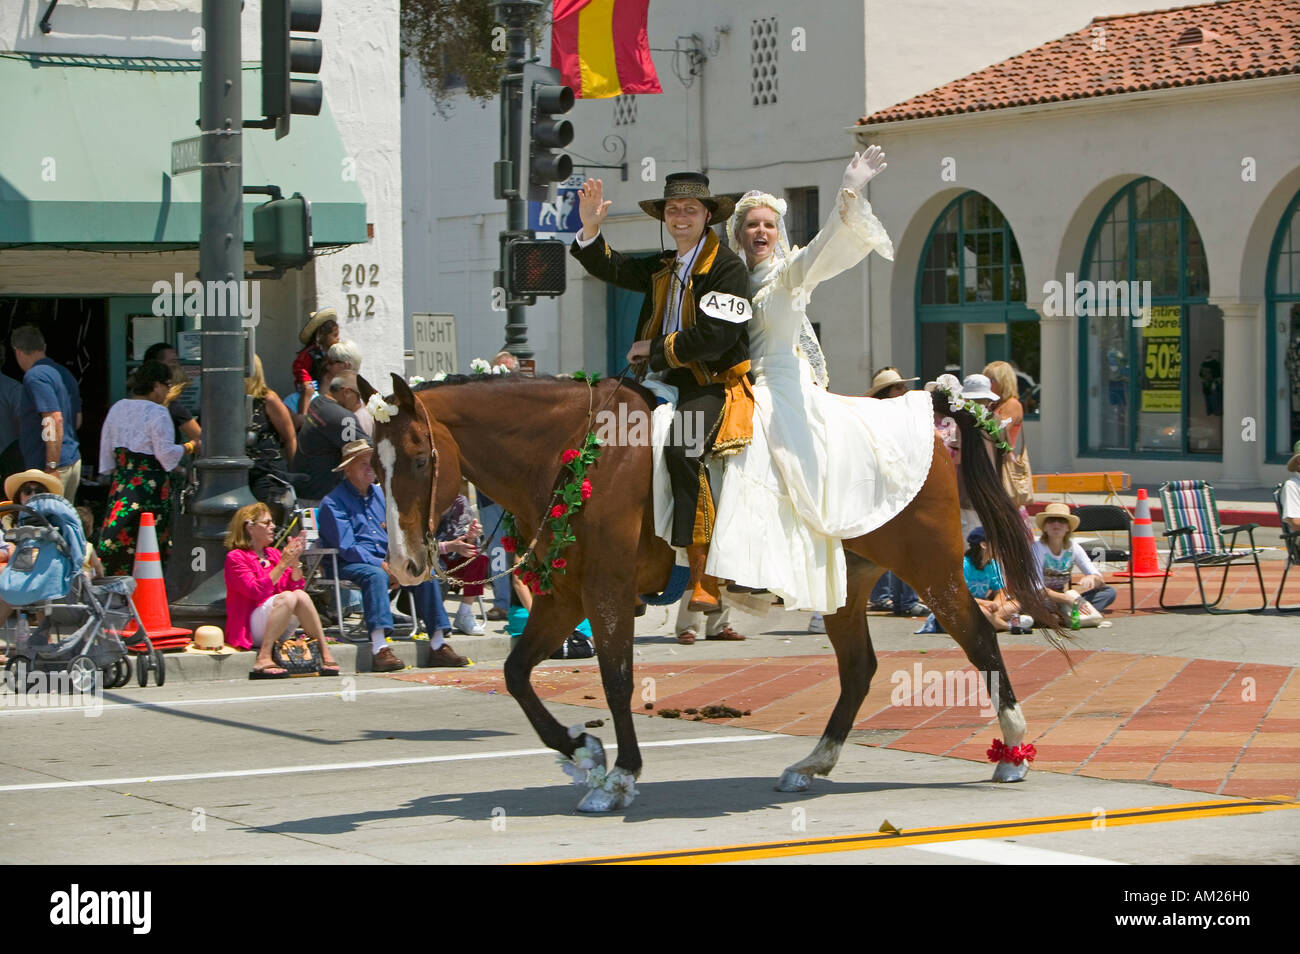 Braut und Bräutigam in spanischen Outfits Reitpferd zusammen während der Öffnungszeiten Tagesparade unten State Street Santa Barbara CA alt Stockfoto